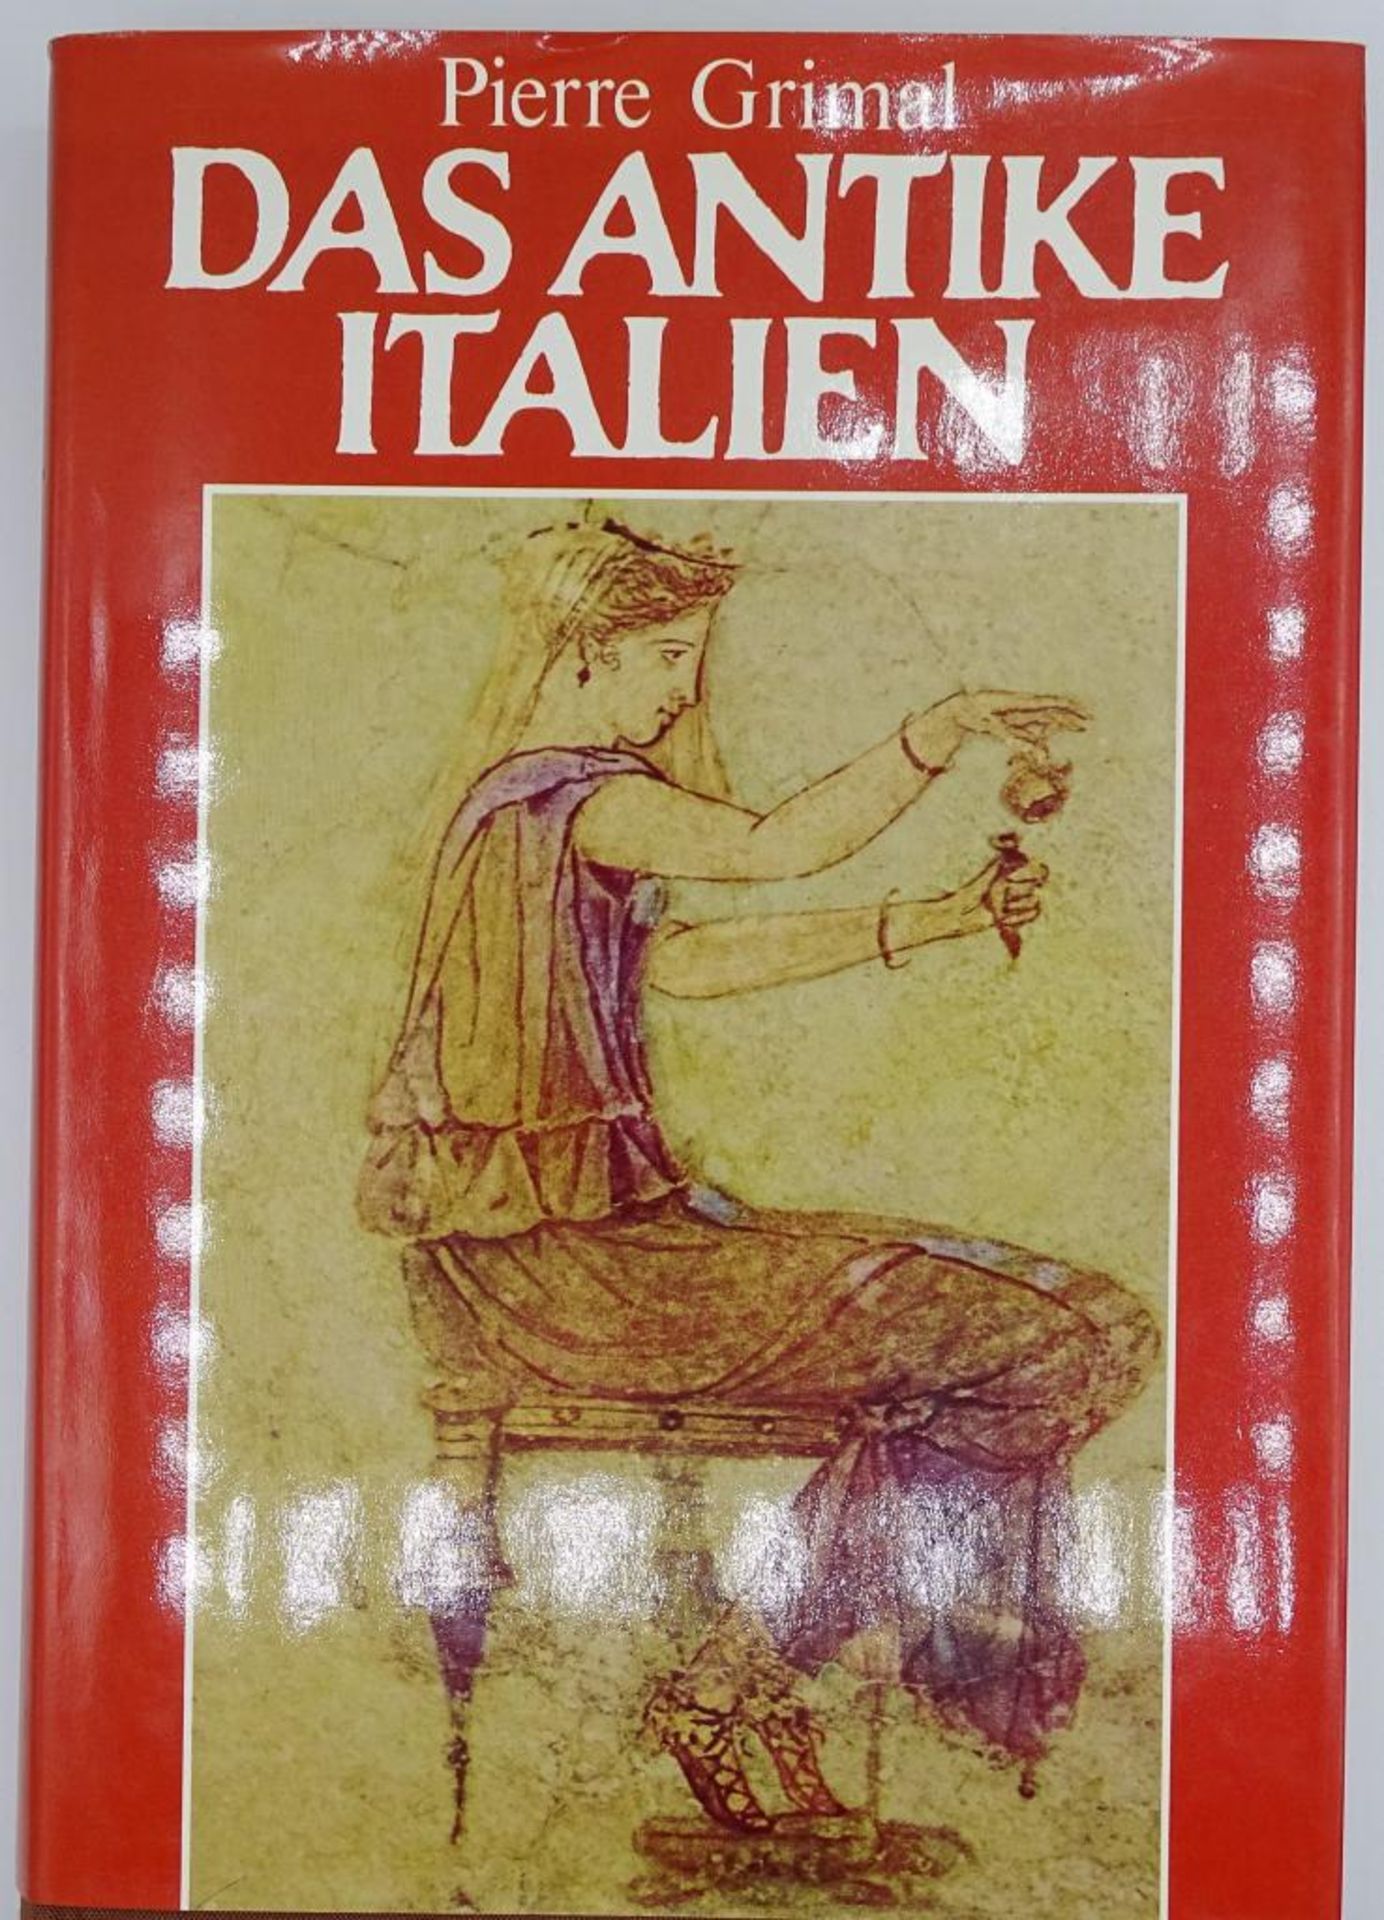 "Das antike Italien"- Pierre Grimal, 1979